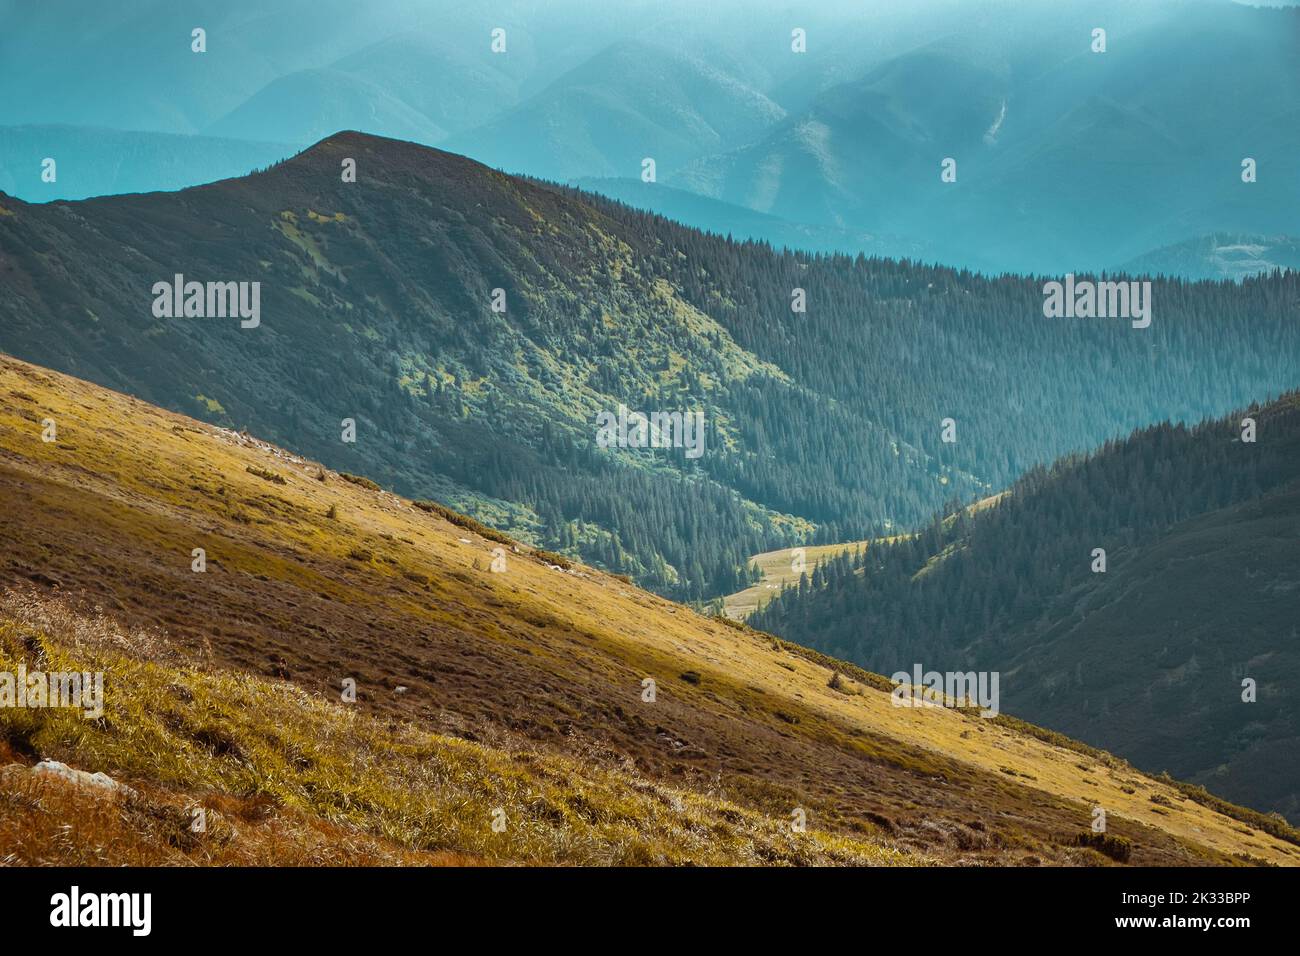 Fantastische alpine Hochlandlandschaft. Bergkiefernwald an Berghängen. Orange Graswiese vor dramatischen blauen Bergkette. Majestätische farbenfrohe Herbstszene. Naturhintergründe. Reiseaufnahme Stockfoto